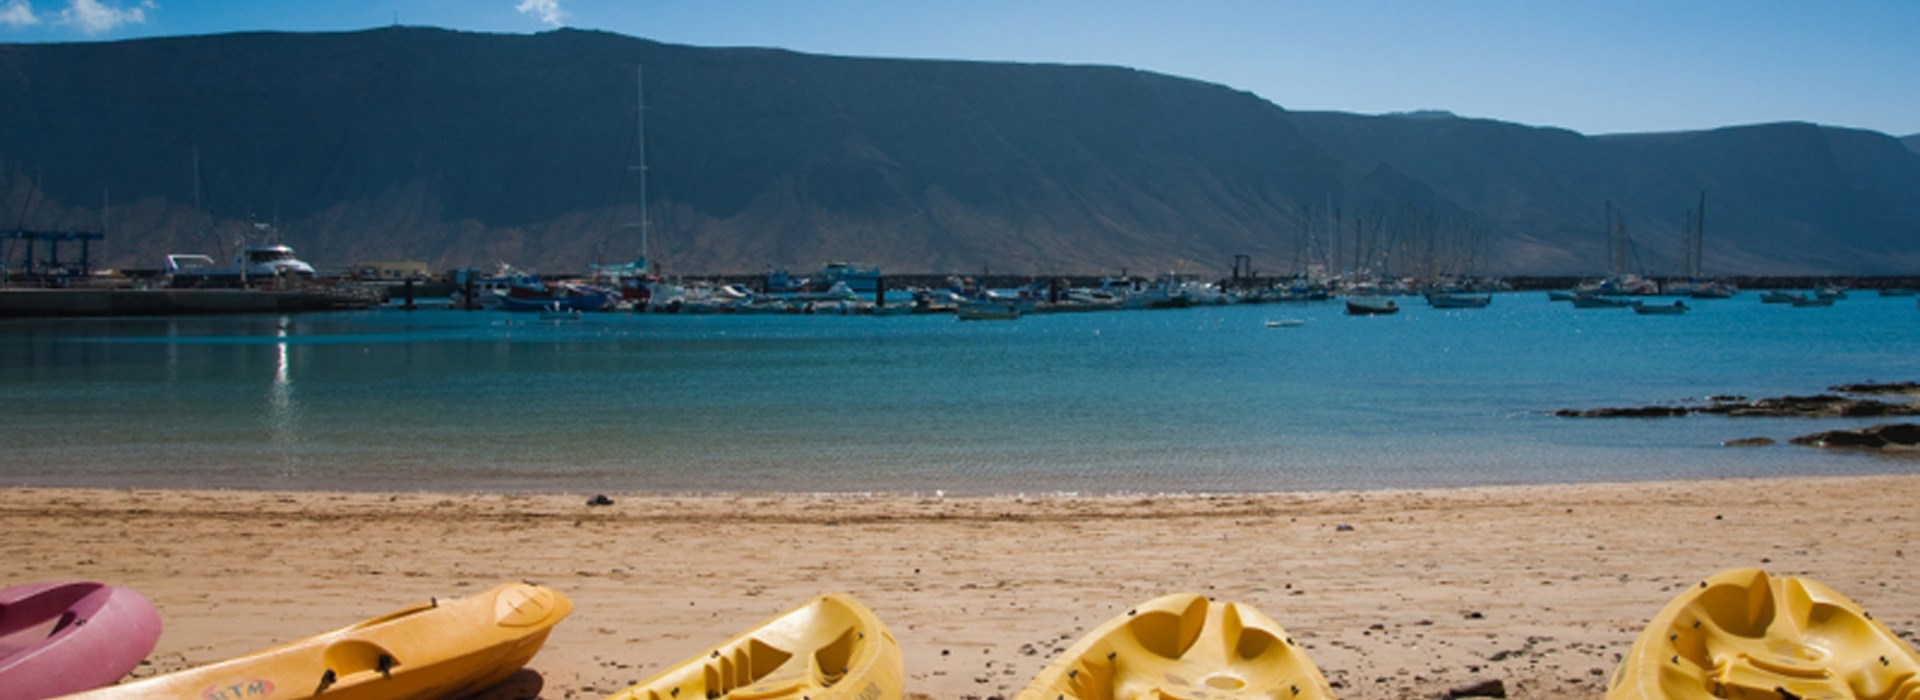 Visiter Le sud de l'île de Lanzarote en kayak - Canaries